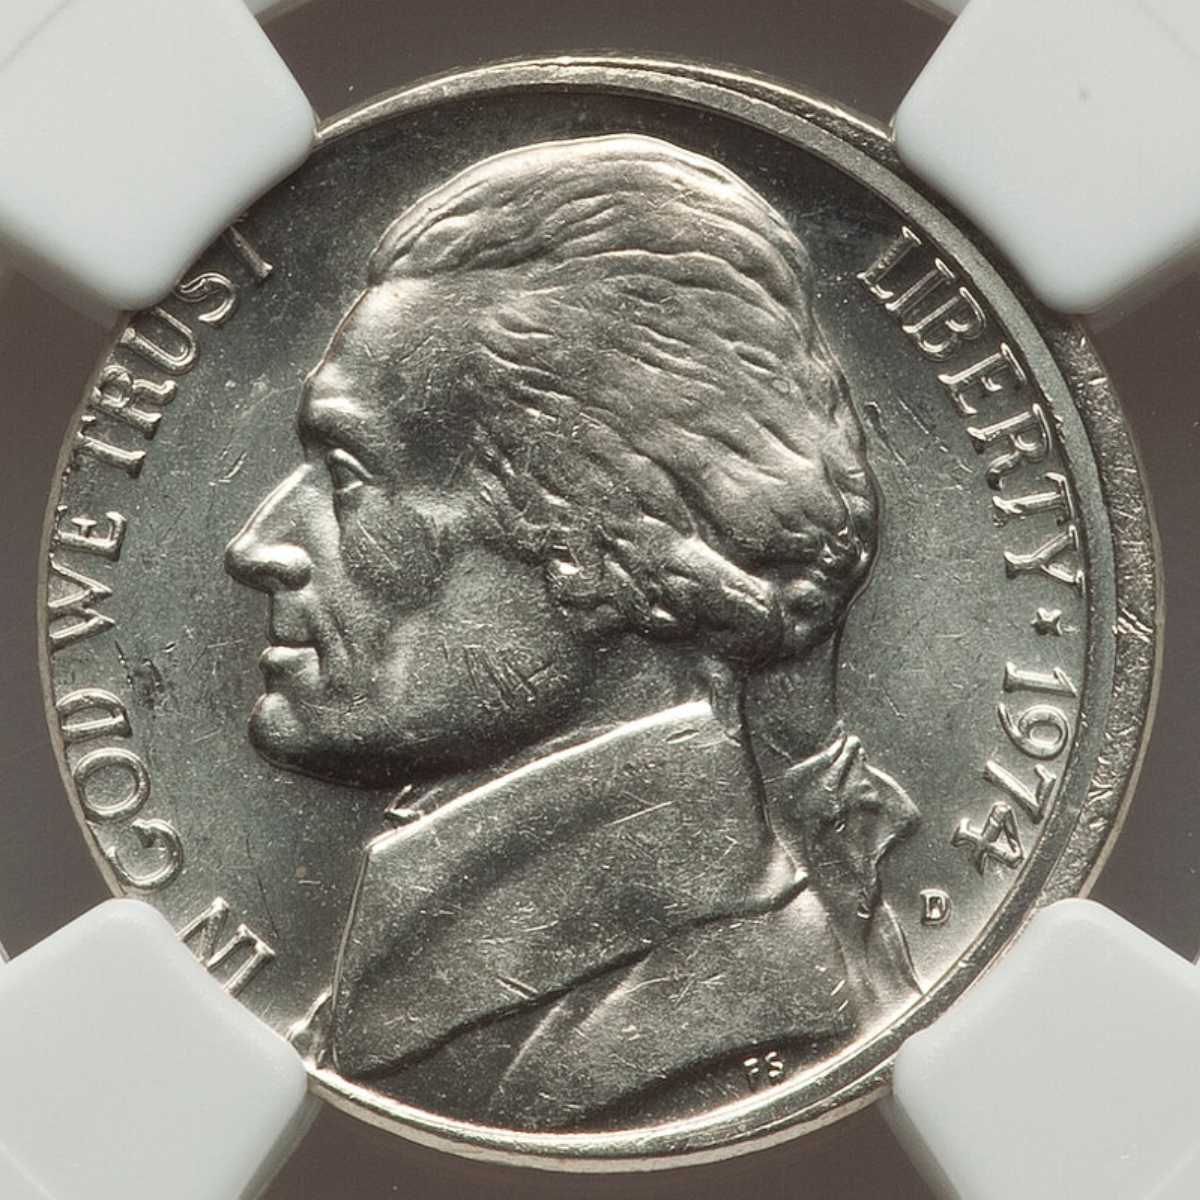 1974 Nickel Misaligned Die Error